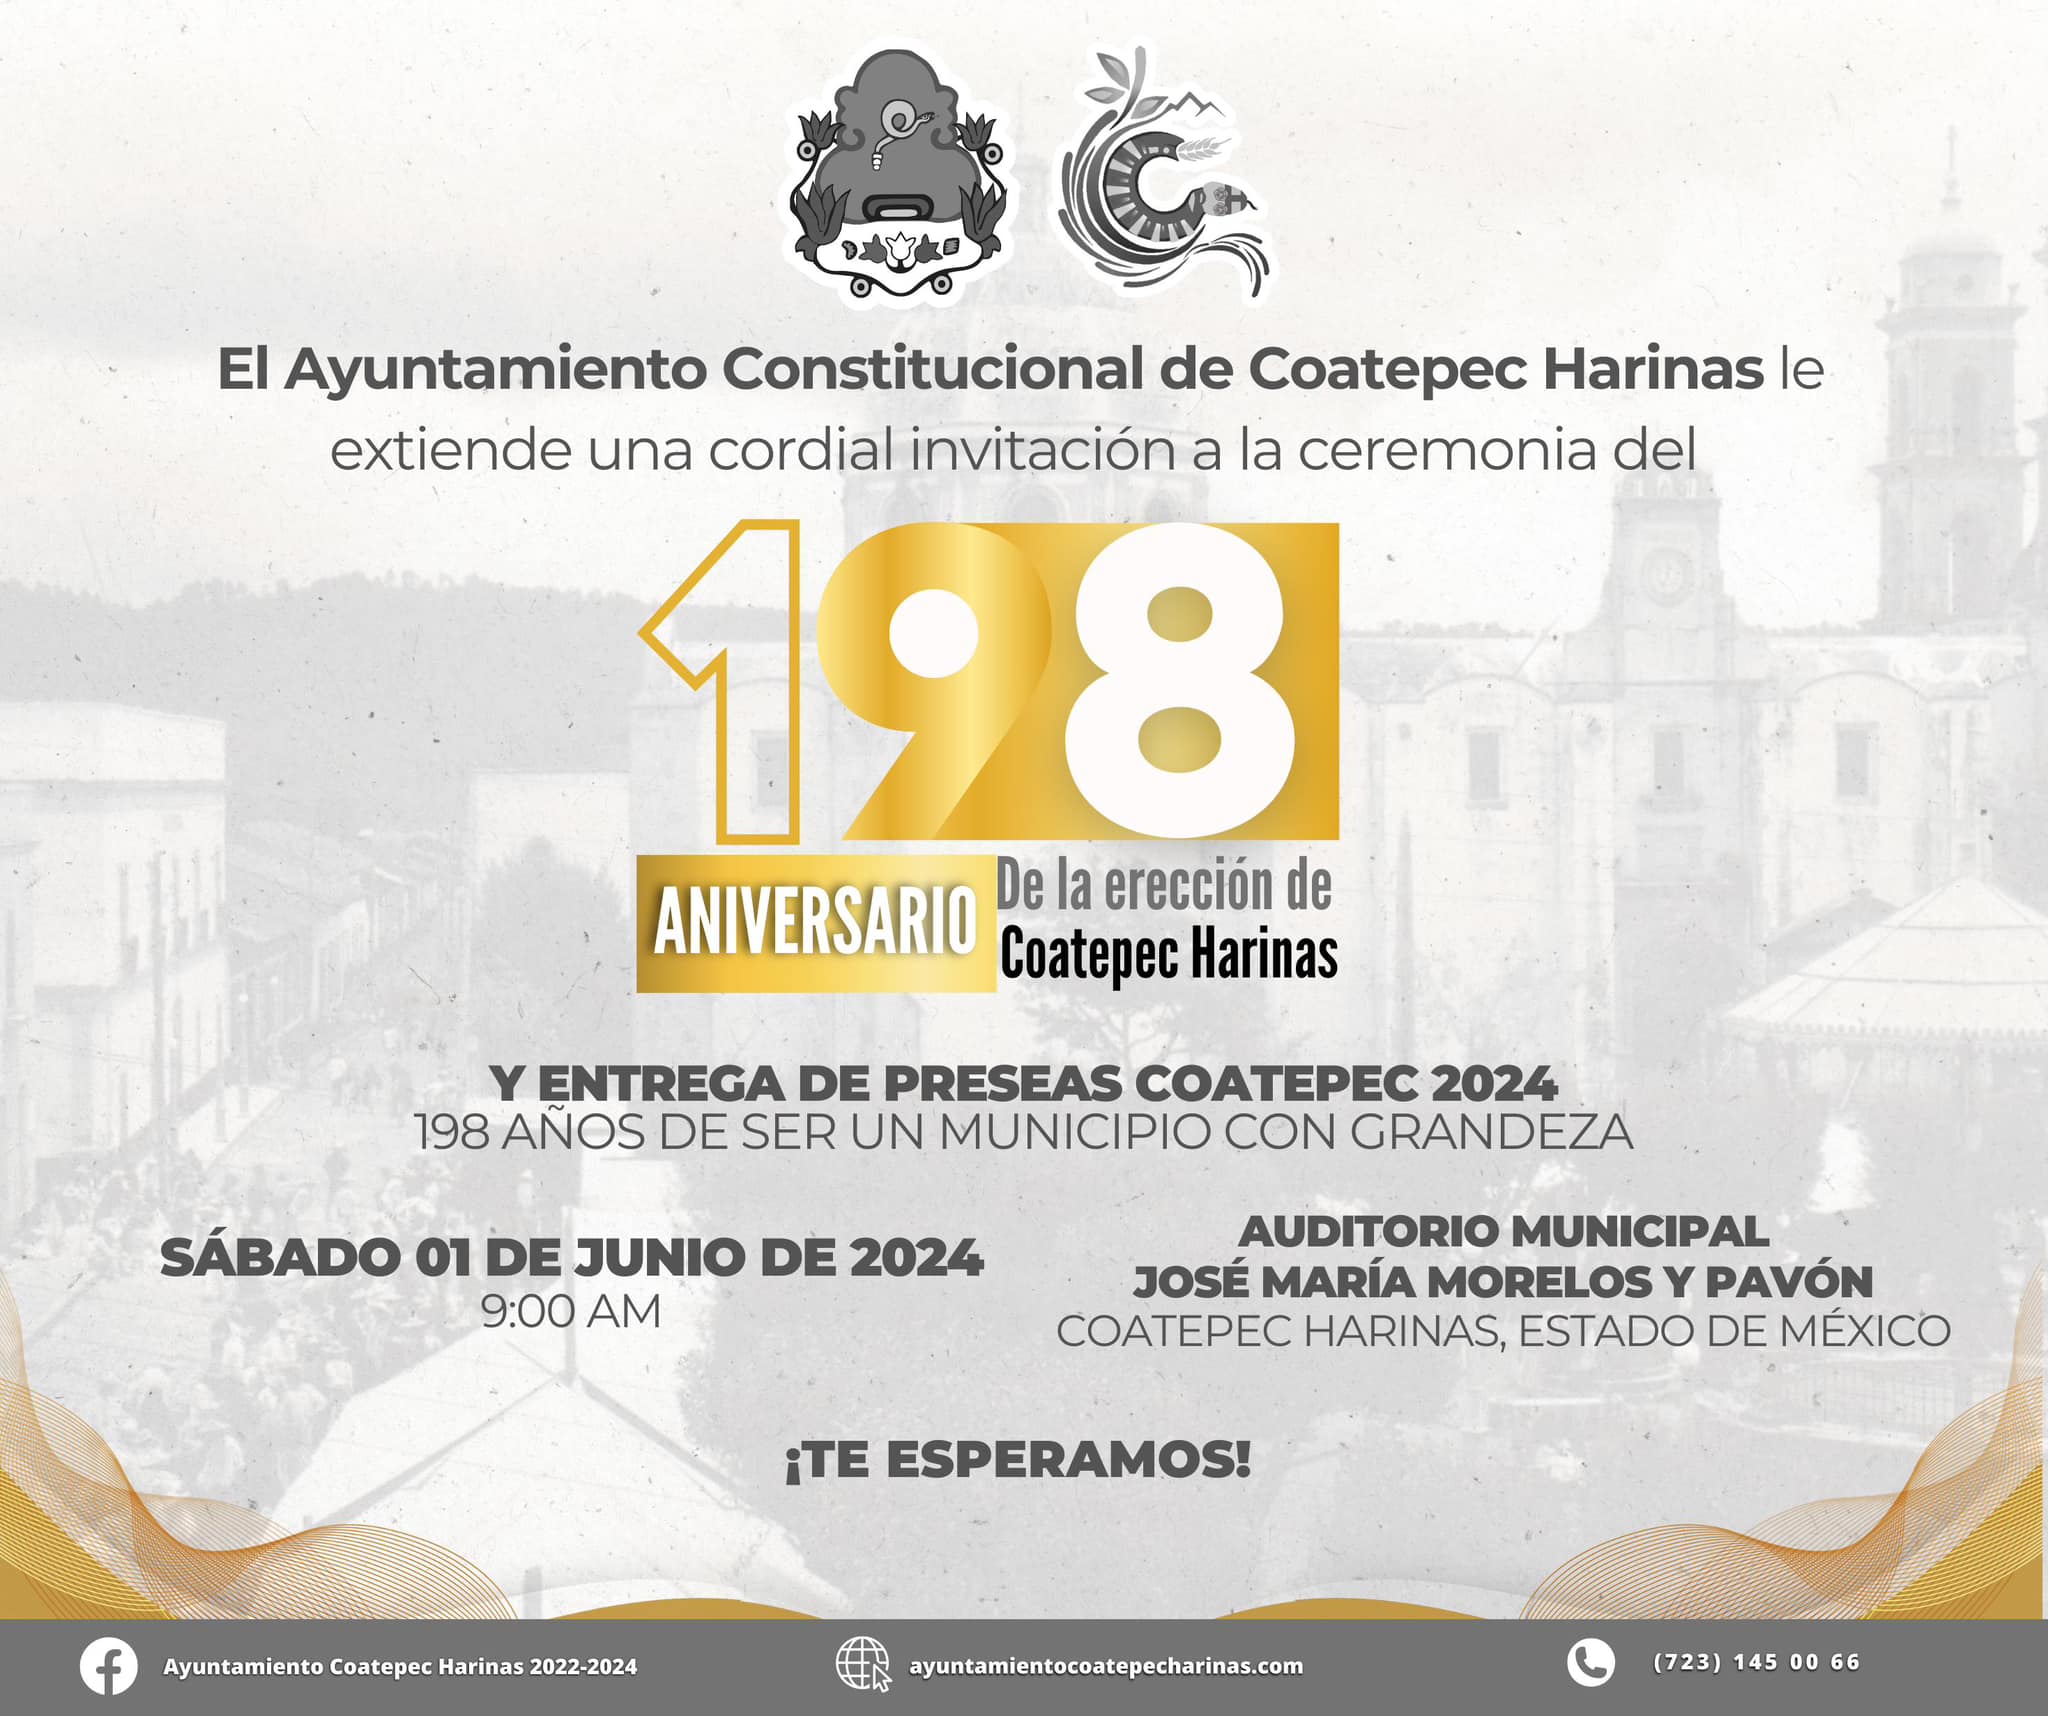 El Ayuntamiento de Coatepec Harinas invita a presenciar la ceremonia